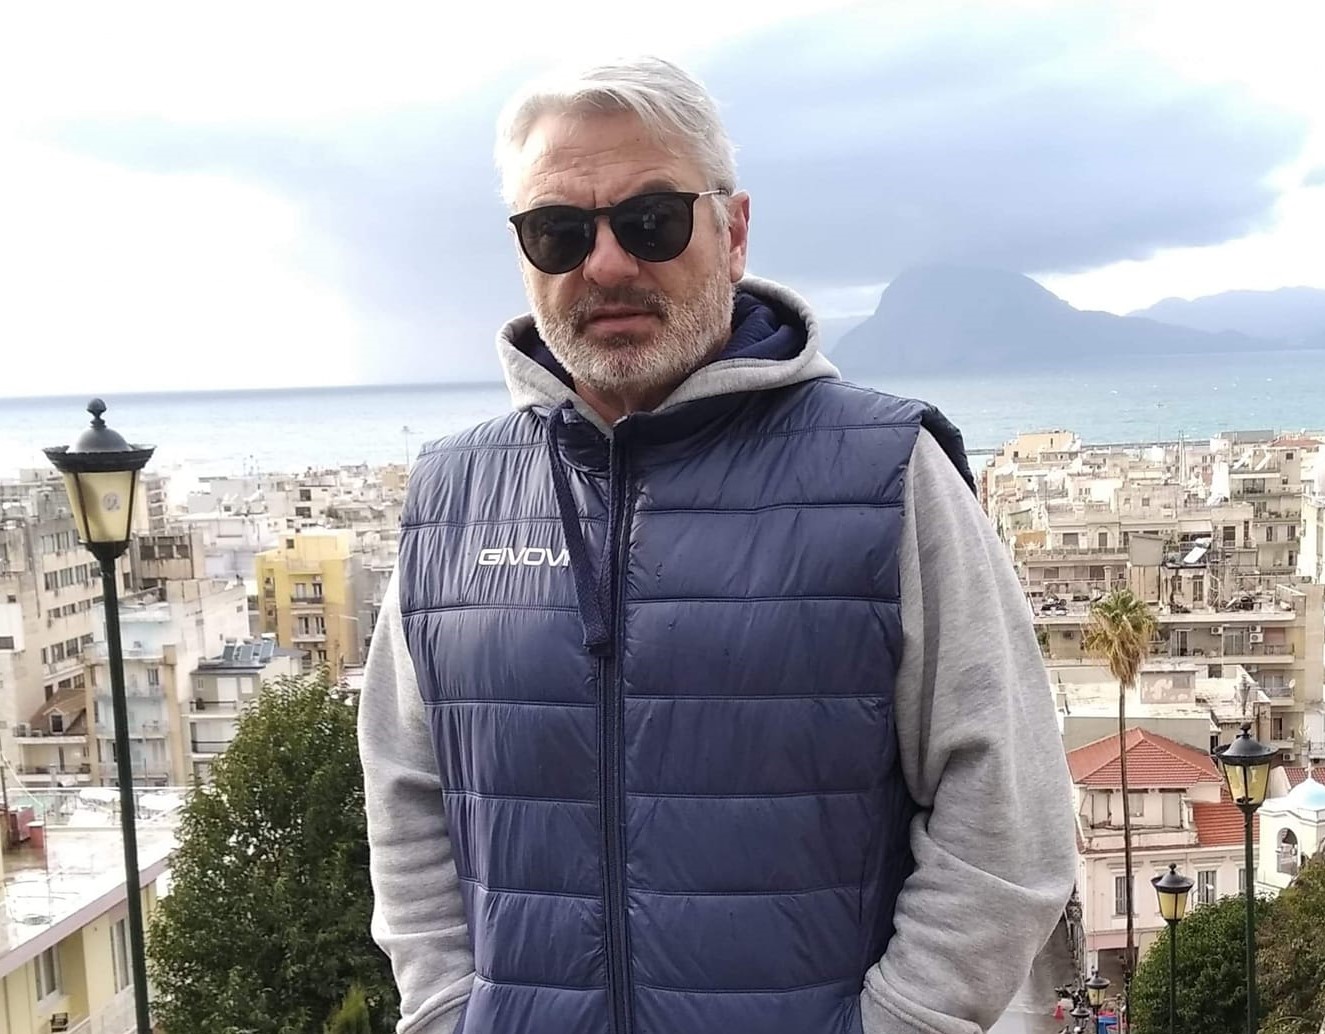 Κώστας Σωτηρόπουλος: Δύο φορές έχει παρακολουθήσει την Παναχαϊκή στην Αγυιά και έχει ισάριθμες νίκες